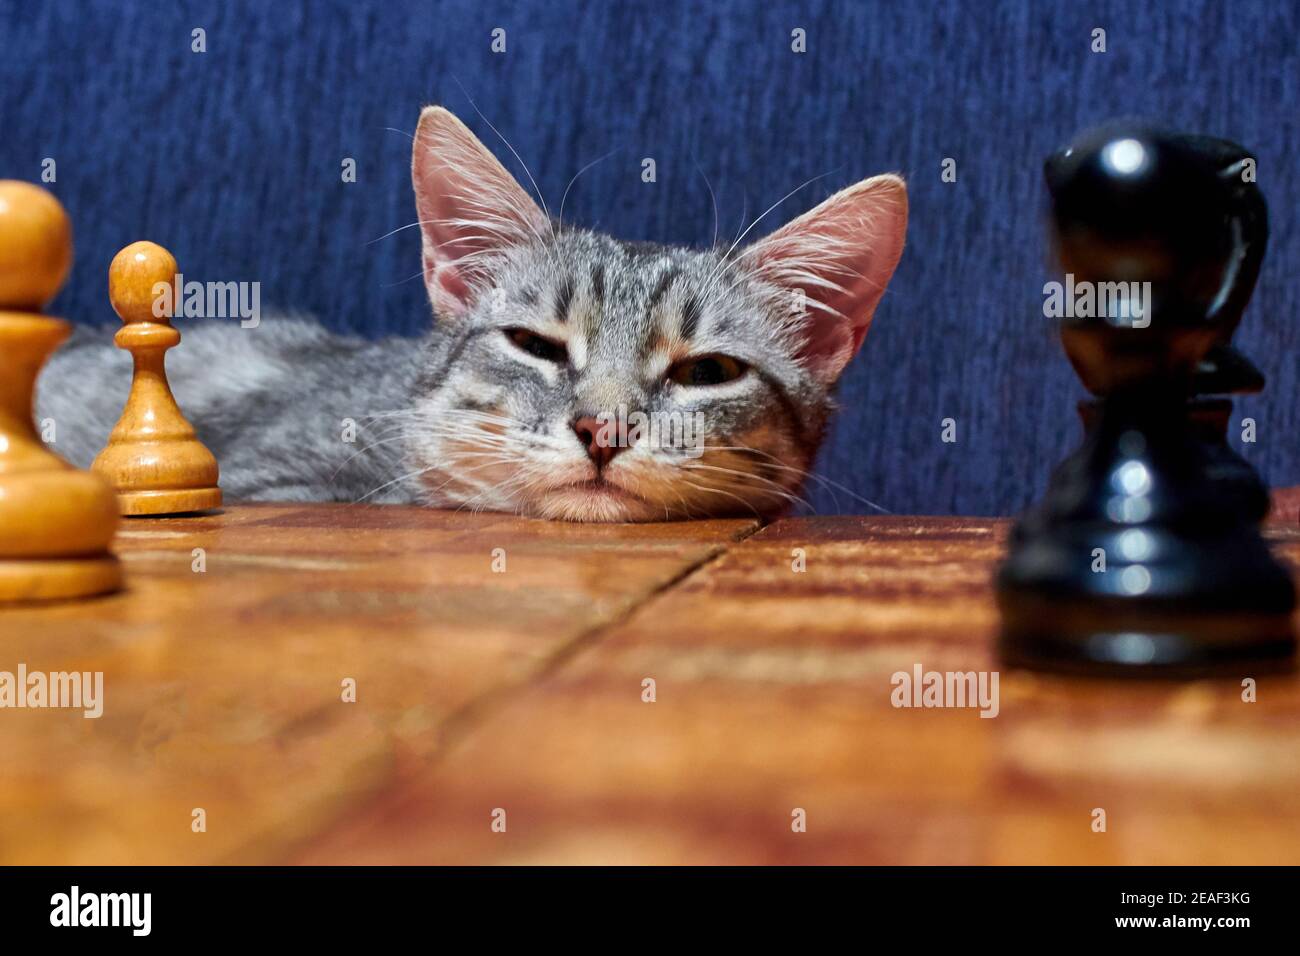 Blauer Hintergrund, Schachbrett in der Nähe des Haustieres. Junge Katze mit großen Ohren mit einem smarten Look. Katze ist für ein altes Schachbrett. Stockfoto